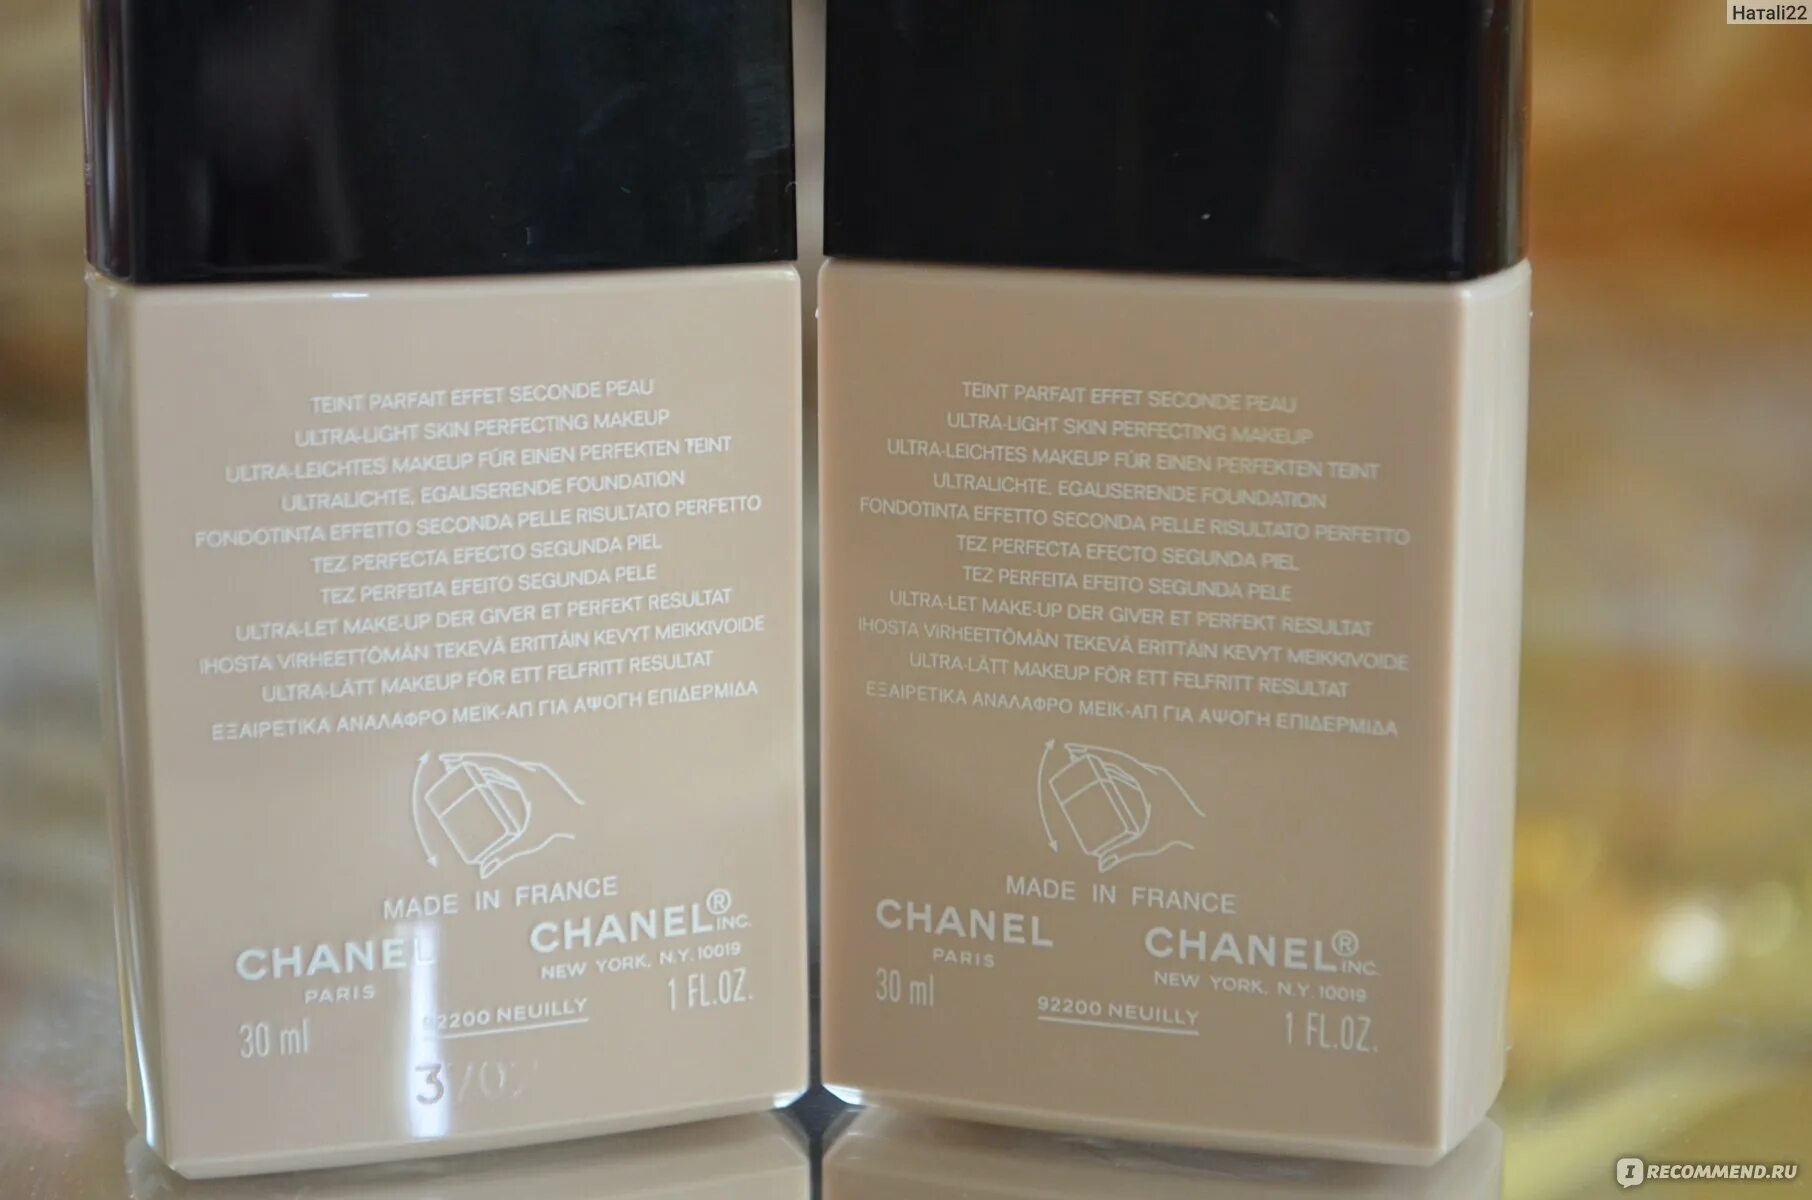 Кожному отзыв. Chanel Vitalumiere тональный флюид для сияния кожи палитра.